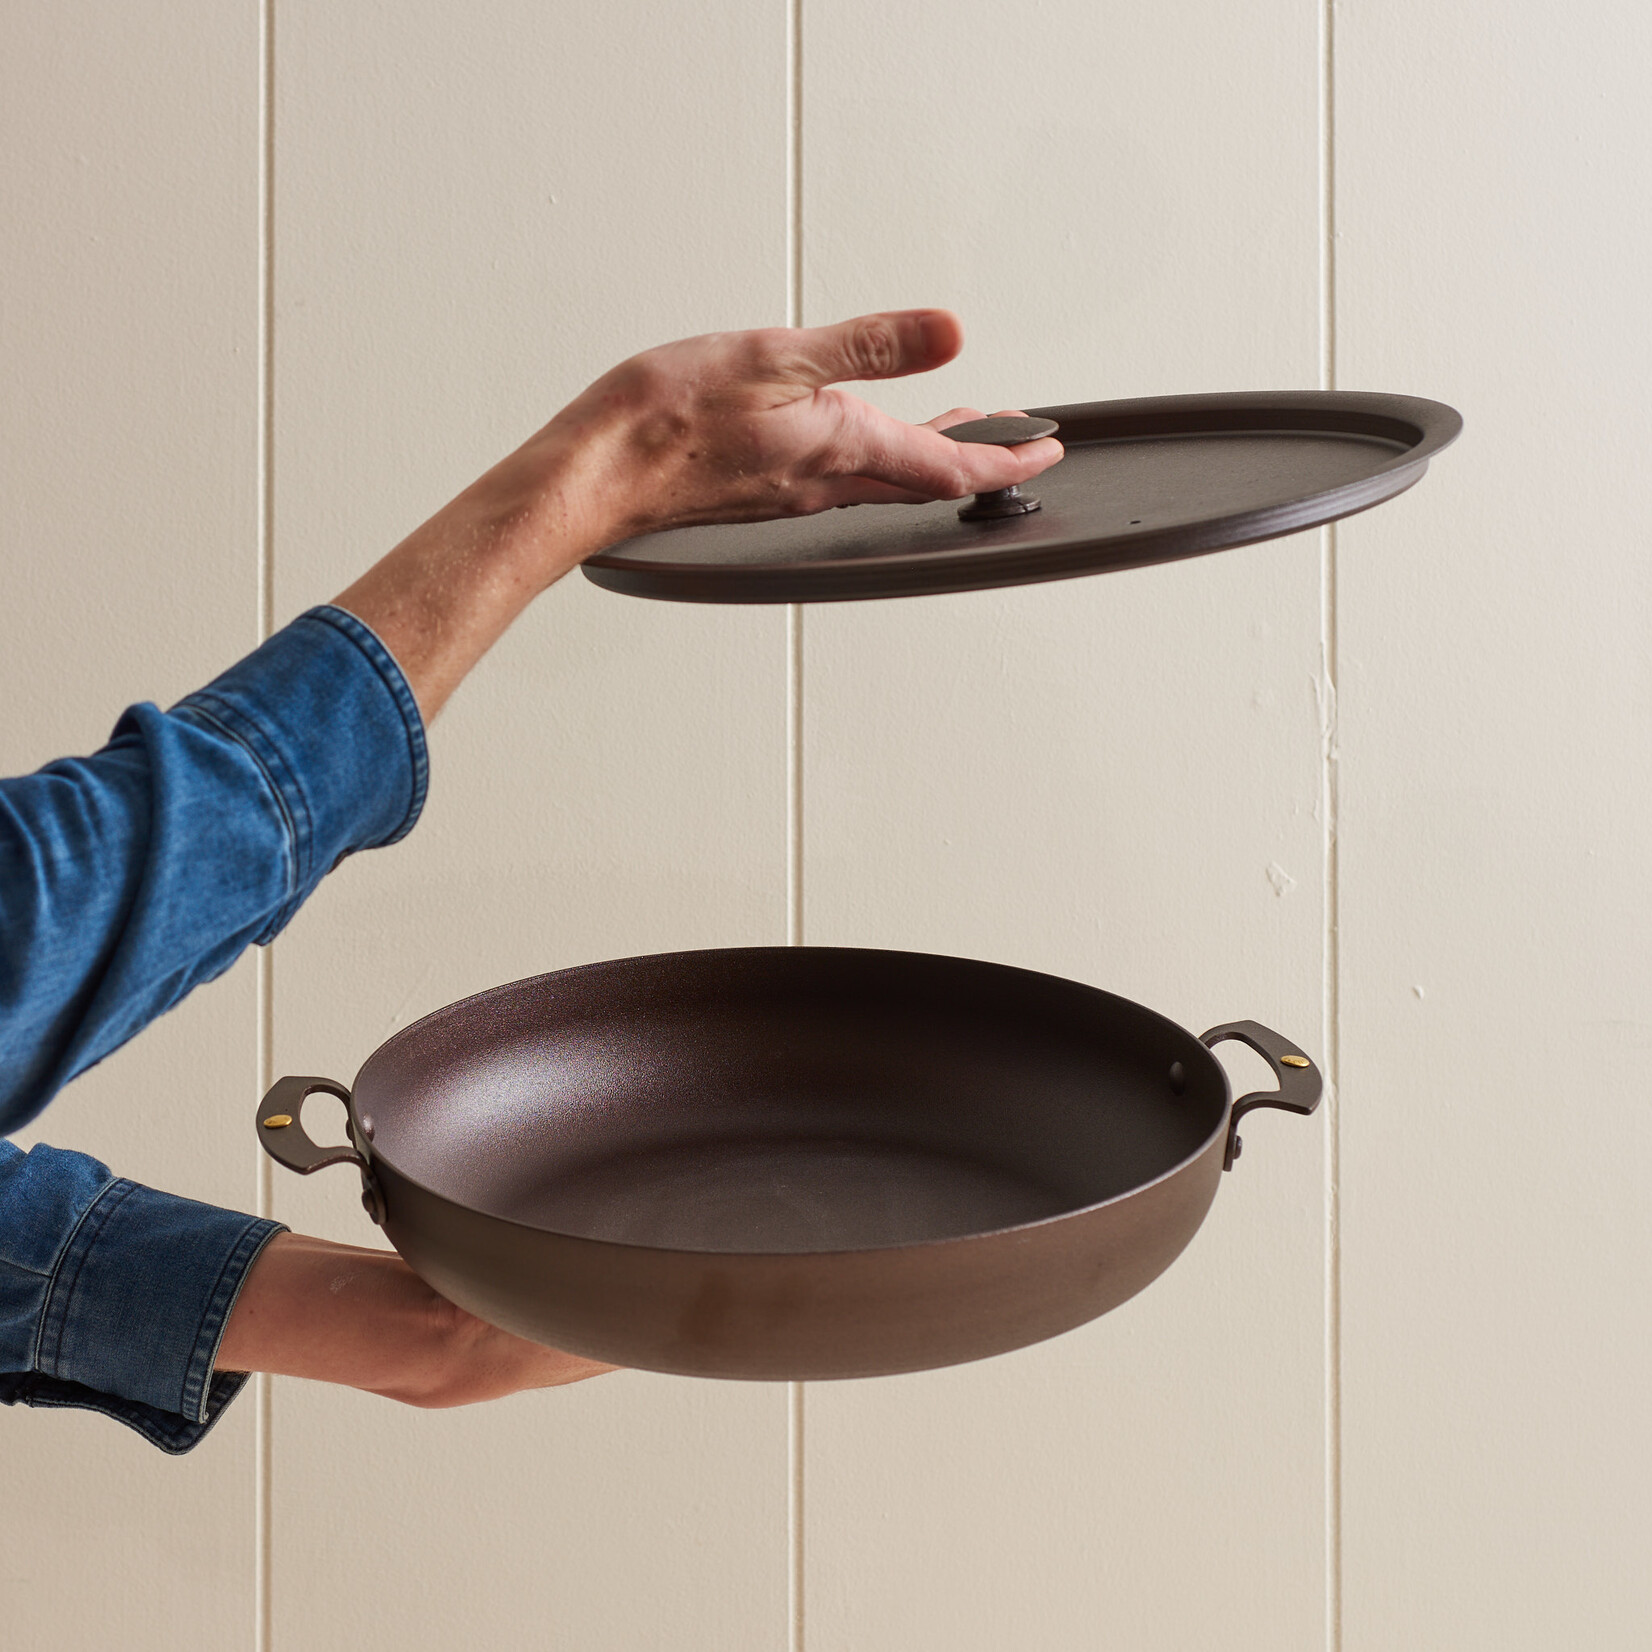 Spun Iron Chef Pan with lid